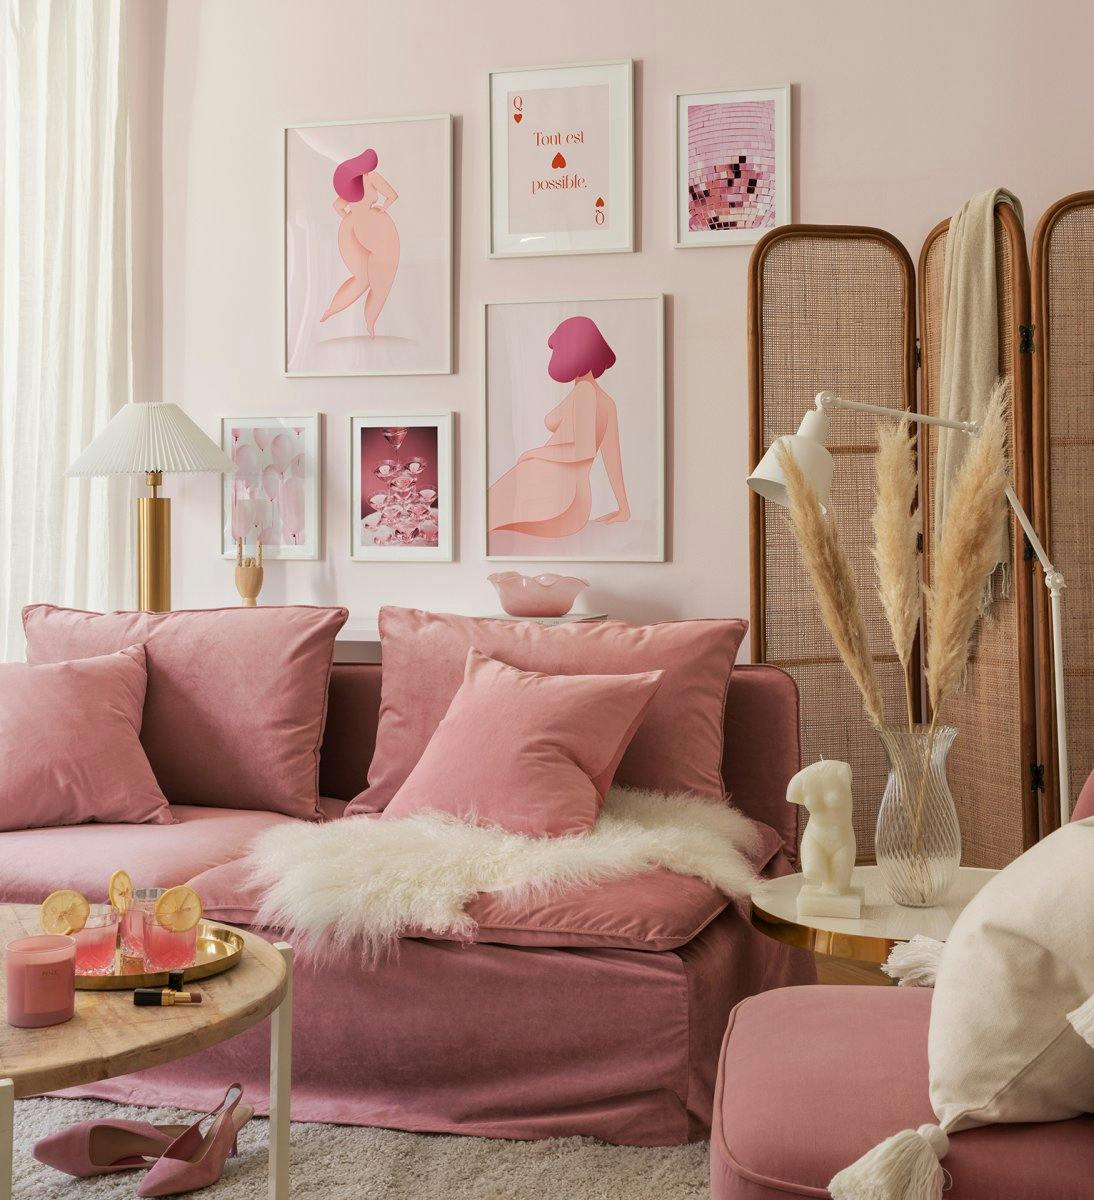 Perete de galerie inspirat de puterea fetelor în roz de forme, ilustrații și fotografii feminine cu rame albe din lemn pentru ca